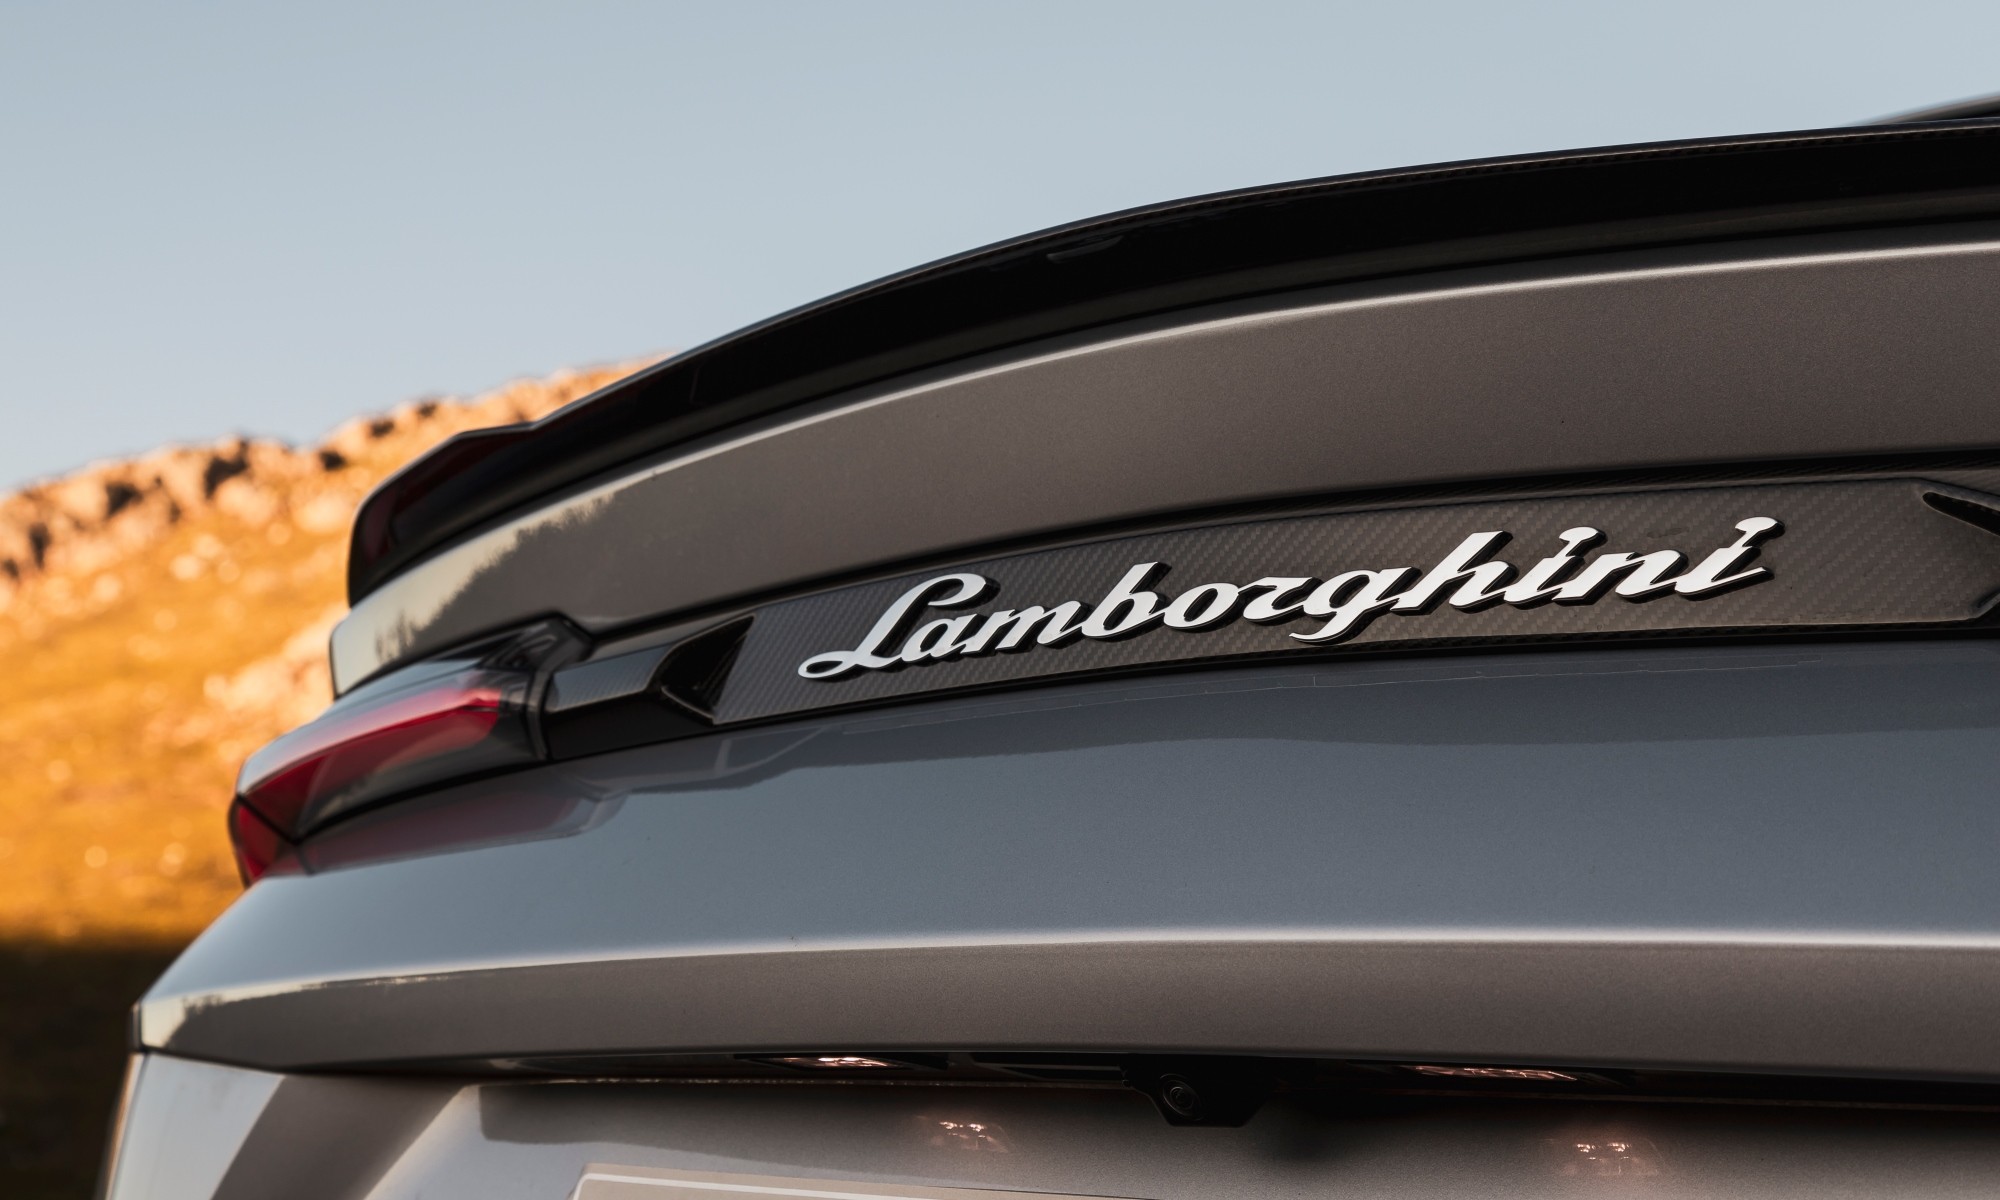 Lamborghini Urus driven badge